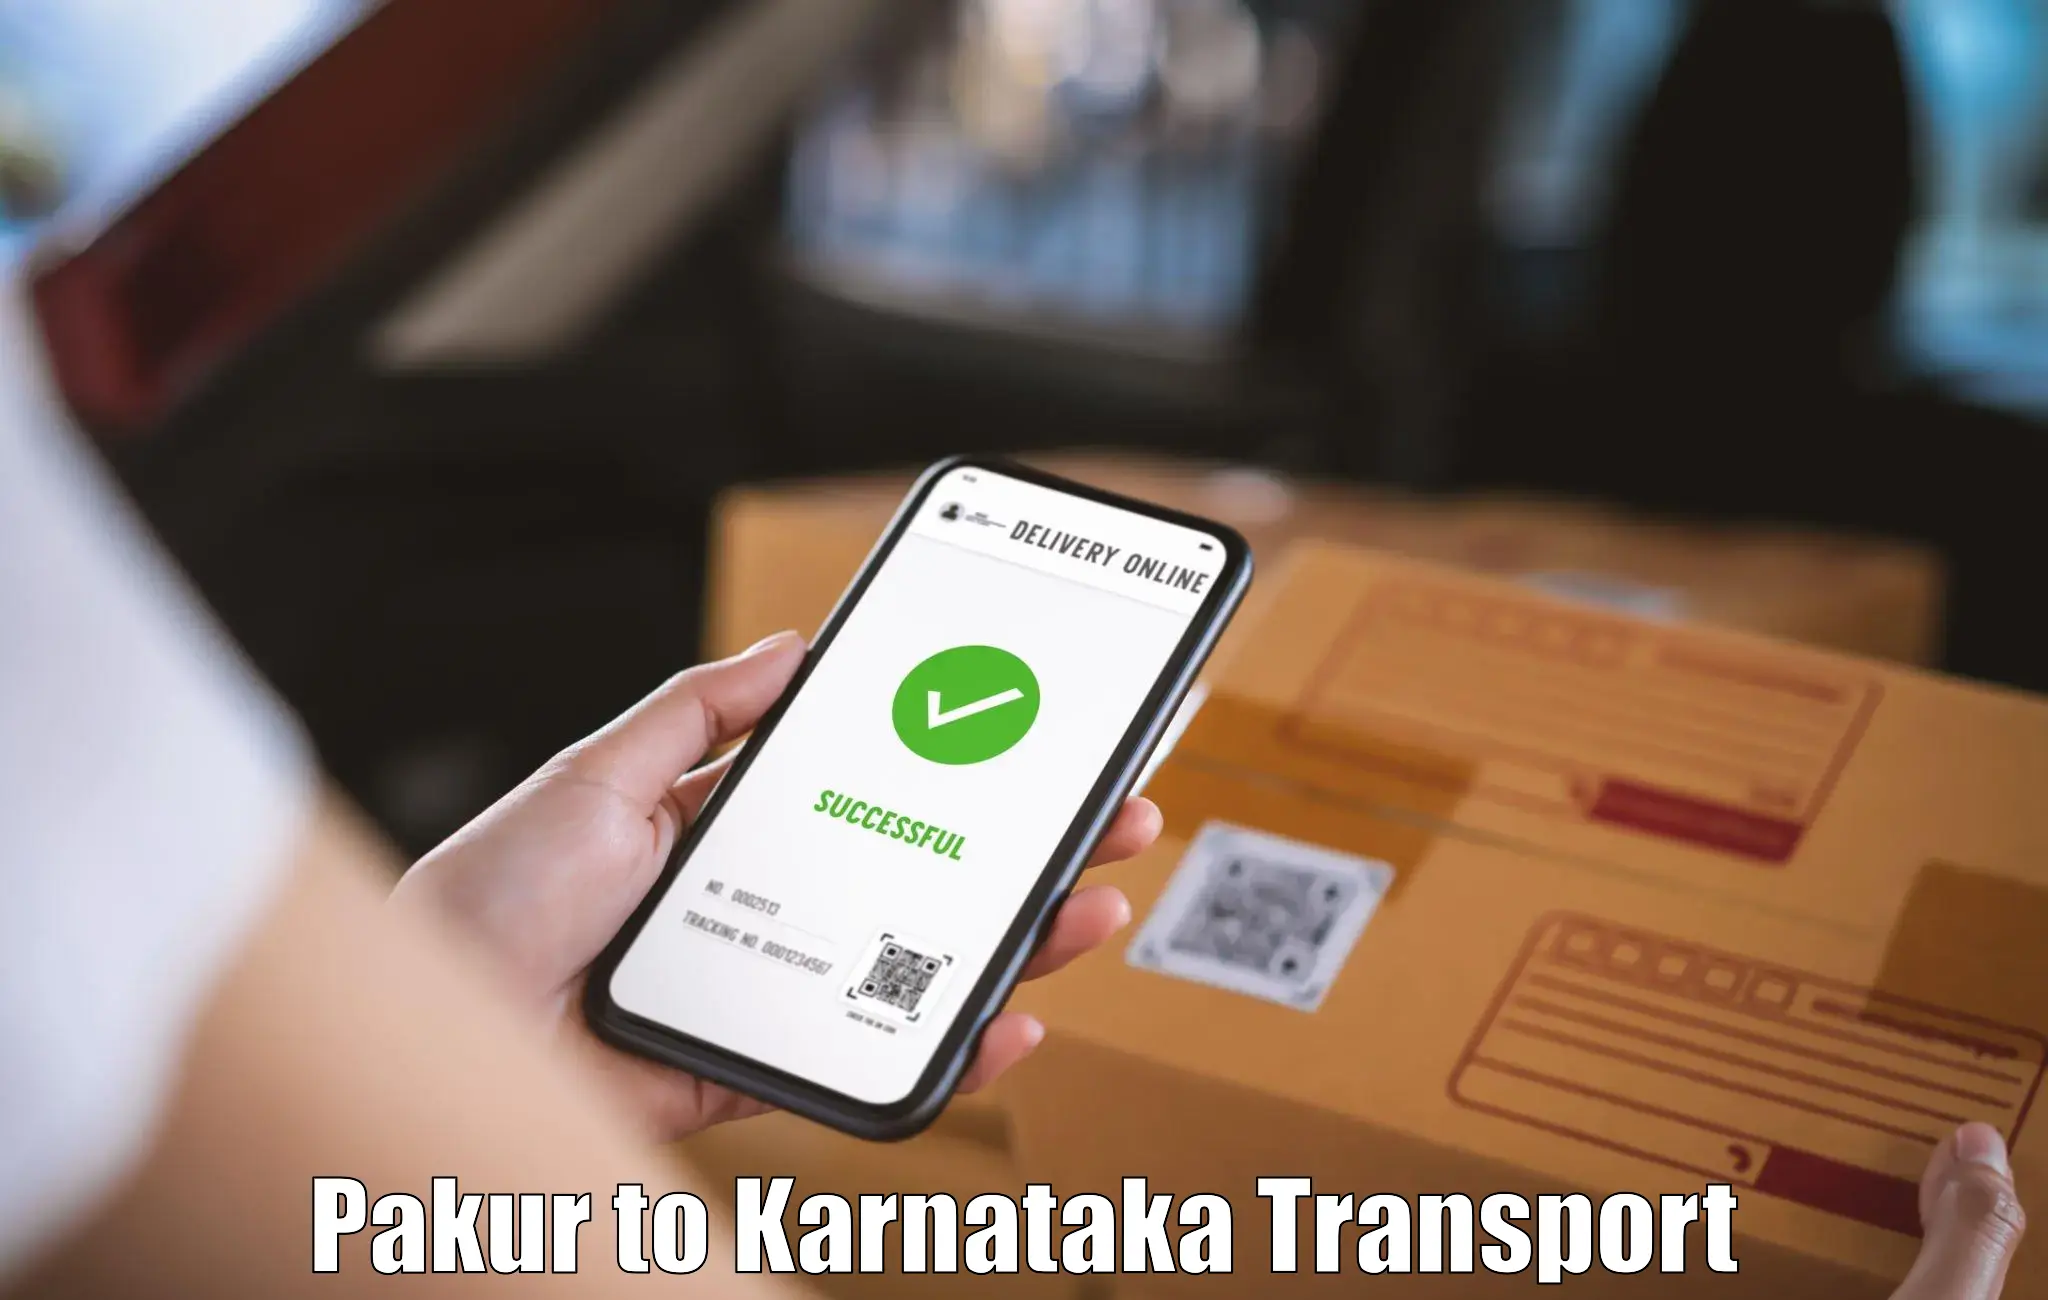 Road transport online services Pakur to Karnataka